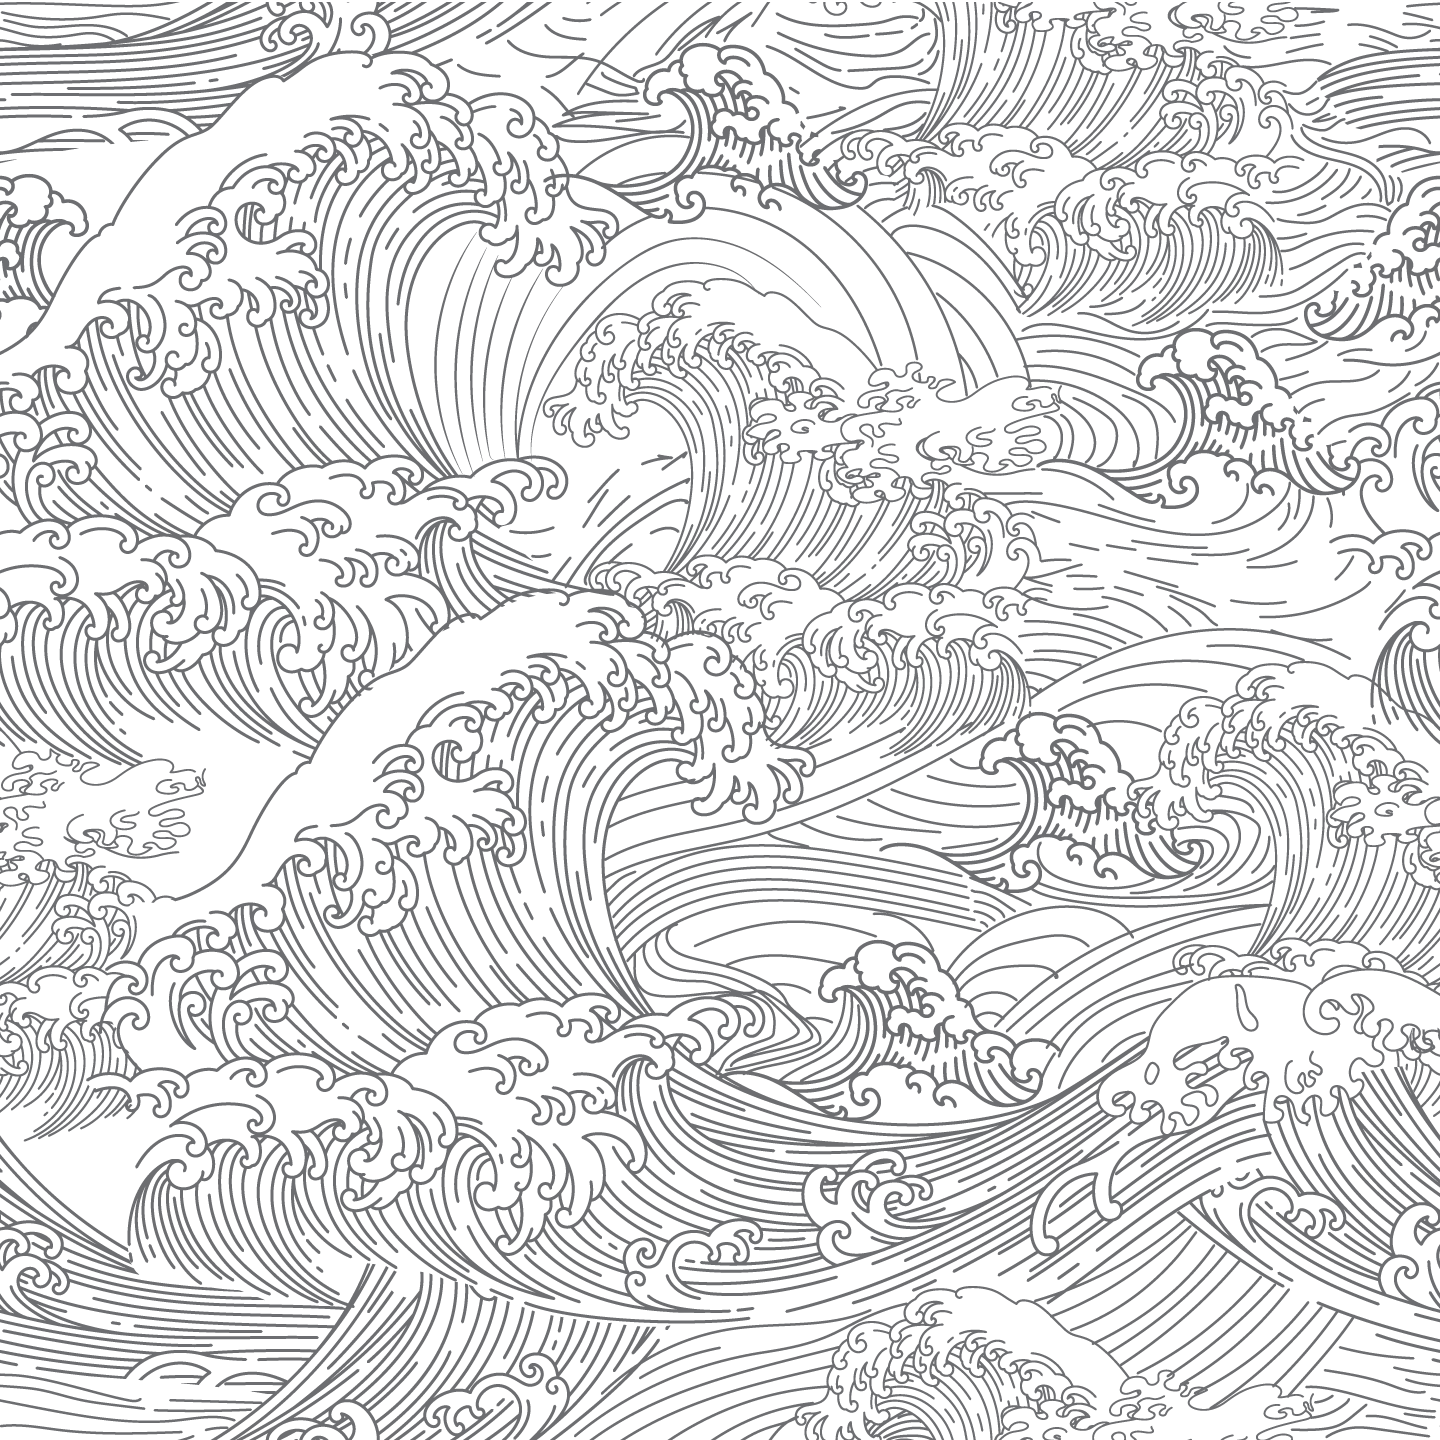 Giấy dán tường sóng Hokusai Nếu bạn đang tìm kiếm một giải pháp sáng tạo để trang trí phòng khách của mình, thì giấy dán tường sóng Hokusai có thể là lựa chọn hoàn hảo. Tham khảo hình ảnh liên quan để tìm hiểu thêm về loại giấy dán tường này.